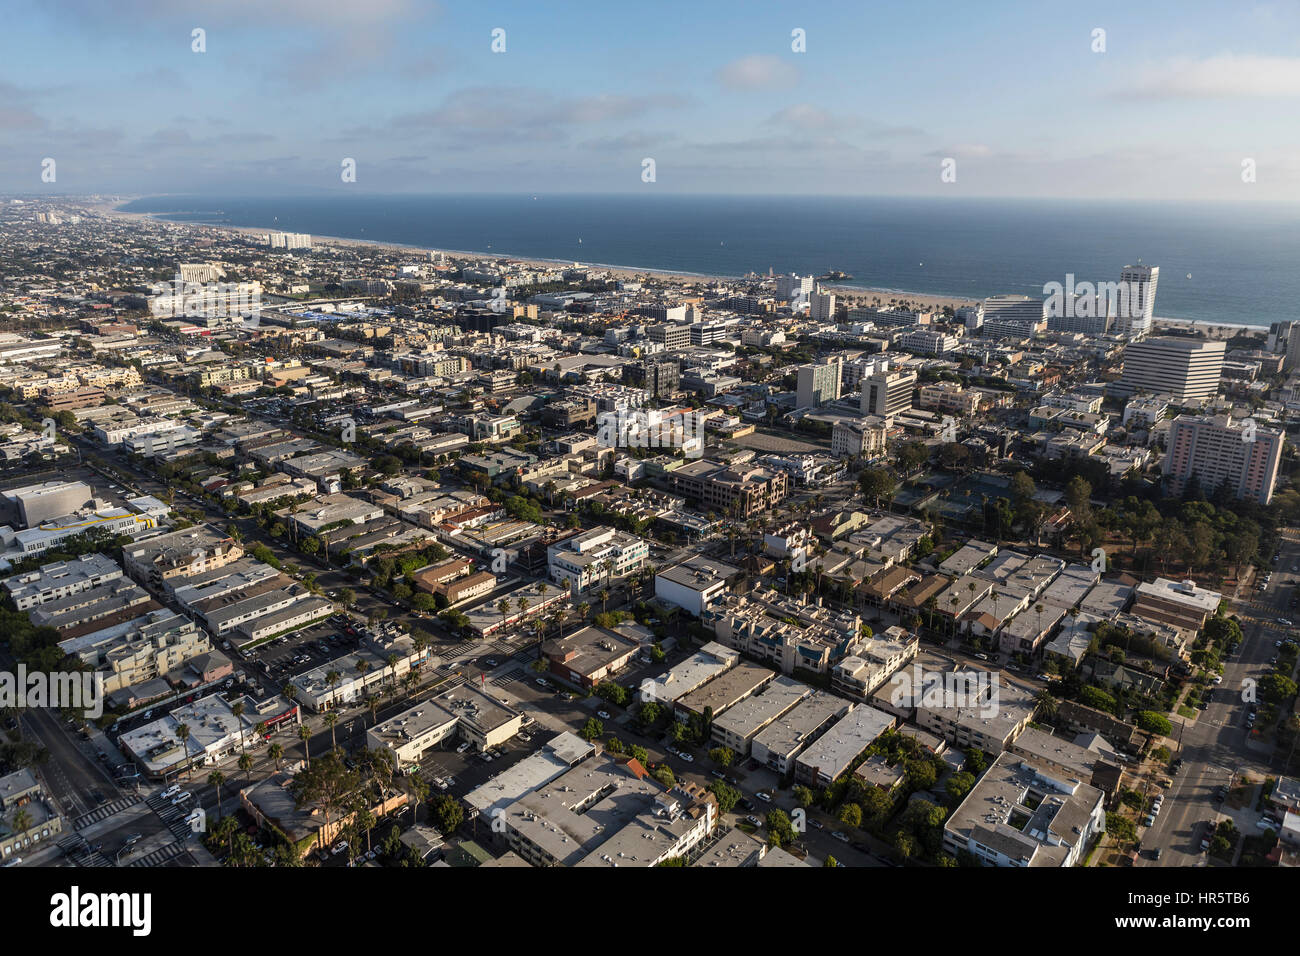 Santa Monica, Californie, USA - 6 août 2016 : Après-midi vue aérienne du centre ville de Santa Monica près de la ville de Los Angeles. Banque D'Images